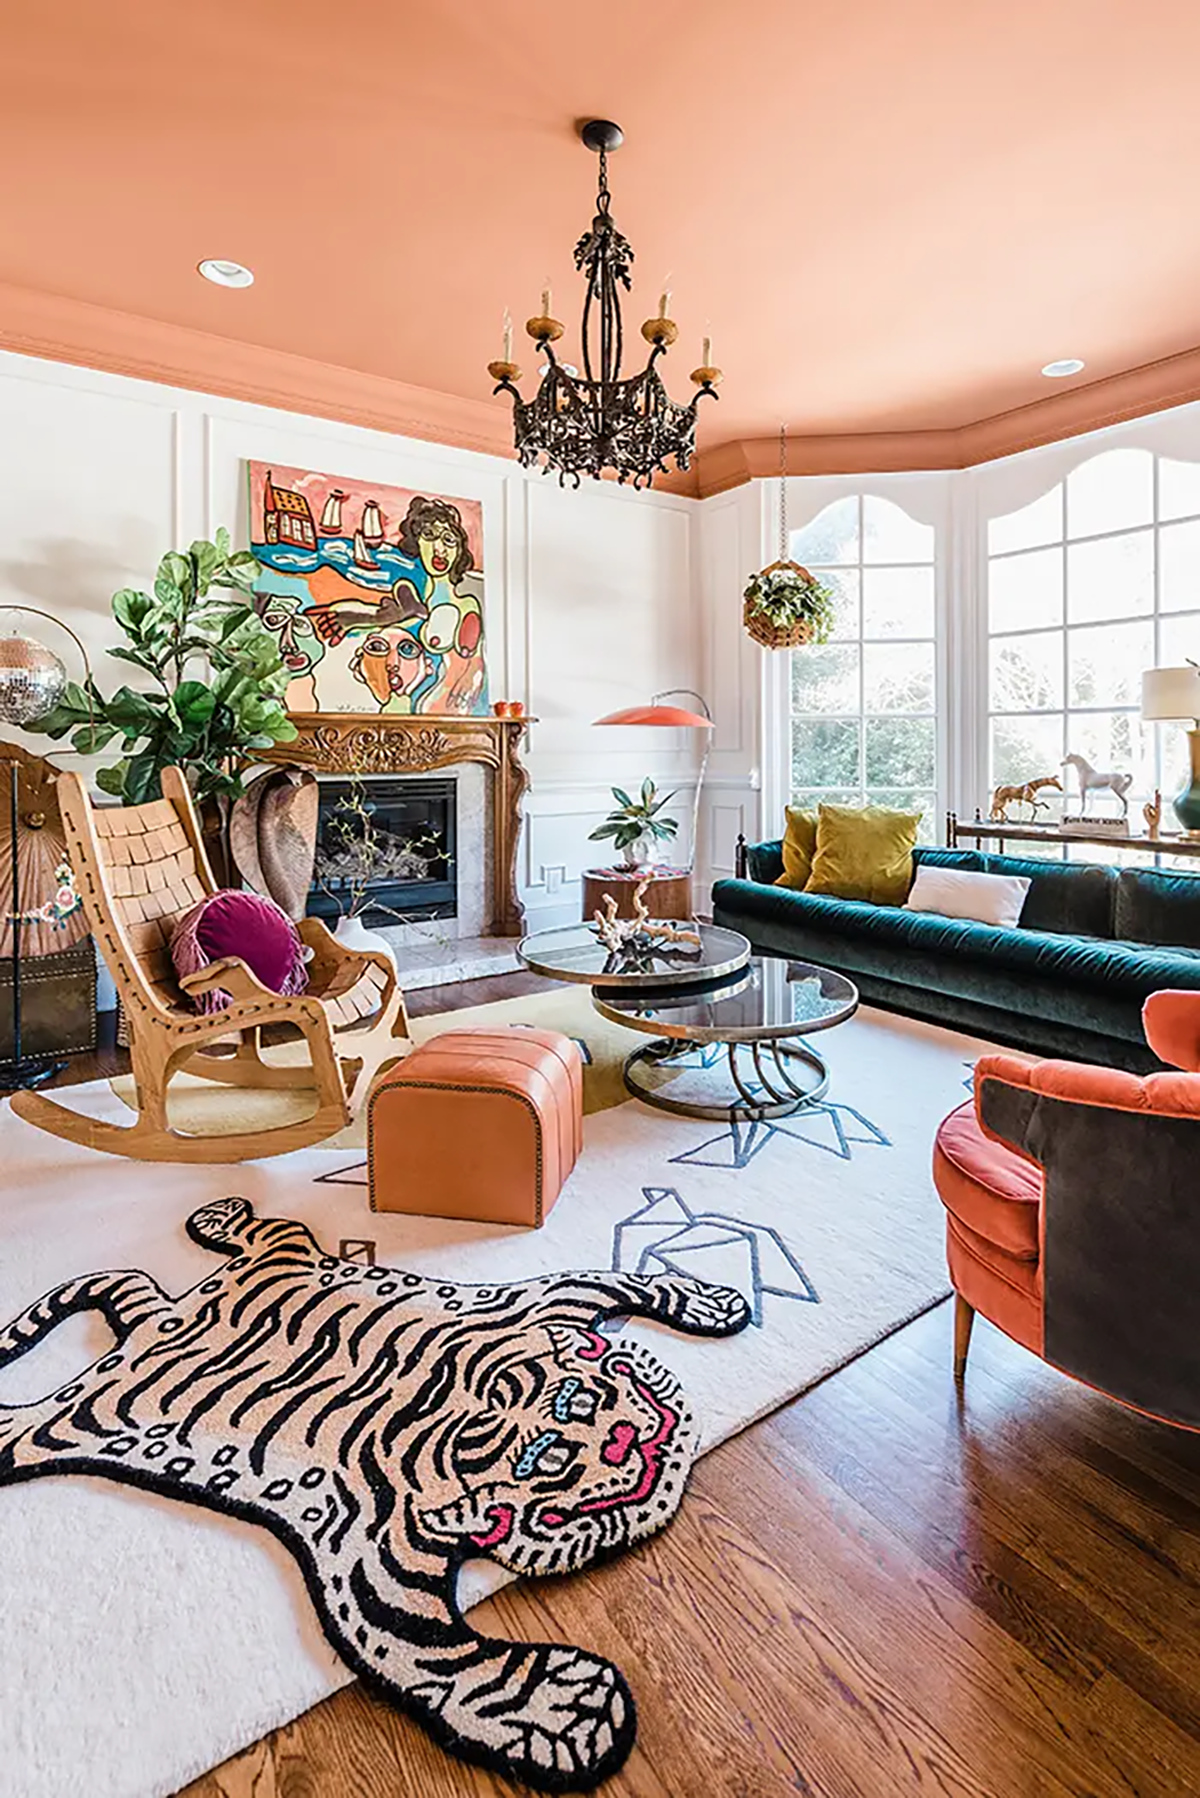 Một căn nhà “Funky home” đầy chất nghệ của một nhà thiết kế tại Mỹ.

Nguồn: charlotte.axios.com